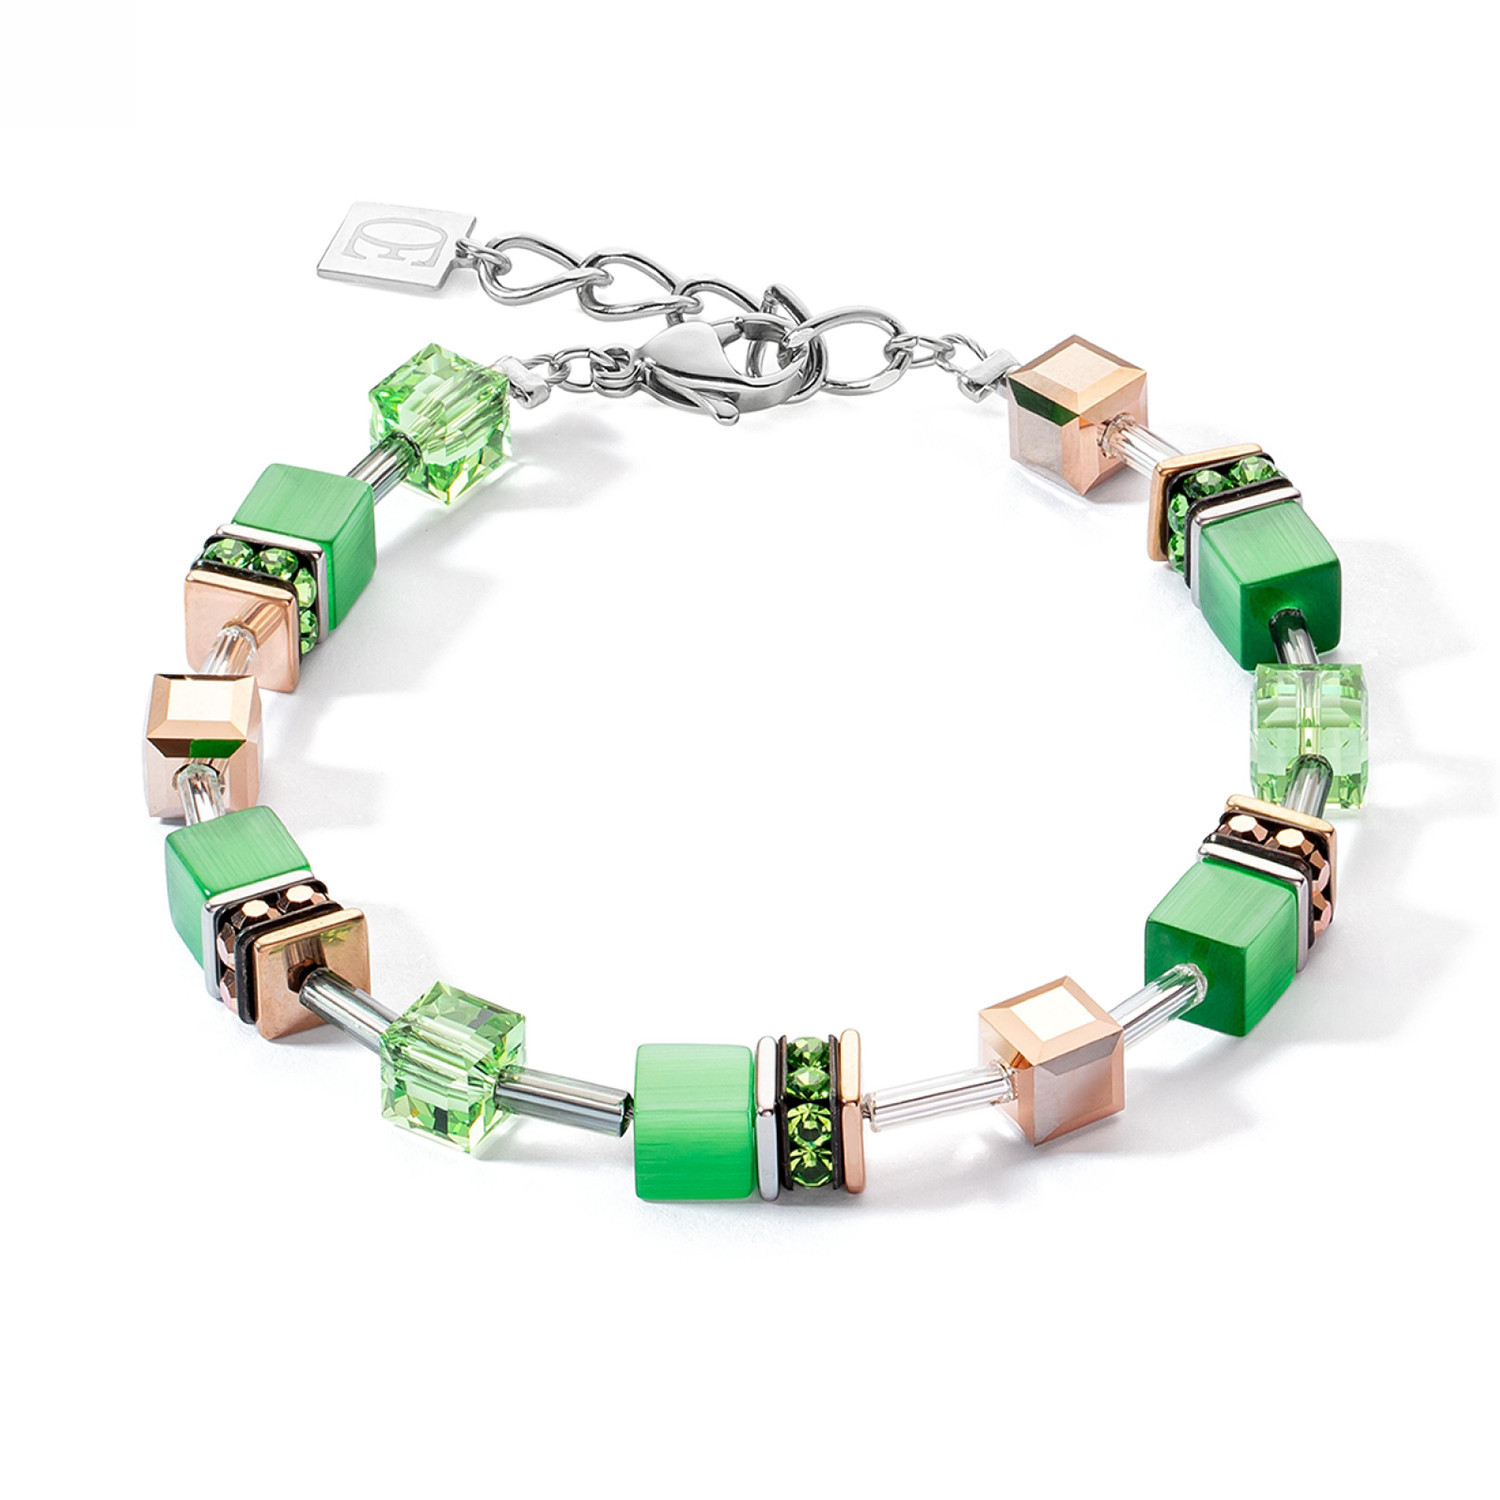 Bracelet Coeur de Lion Geocube Iconic
monochrome vert